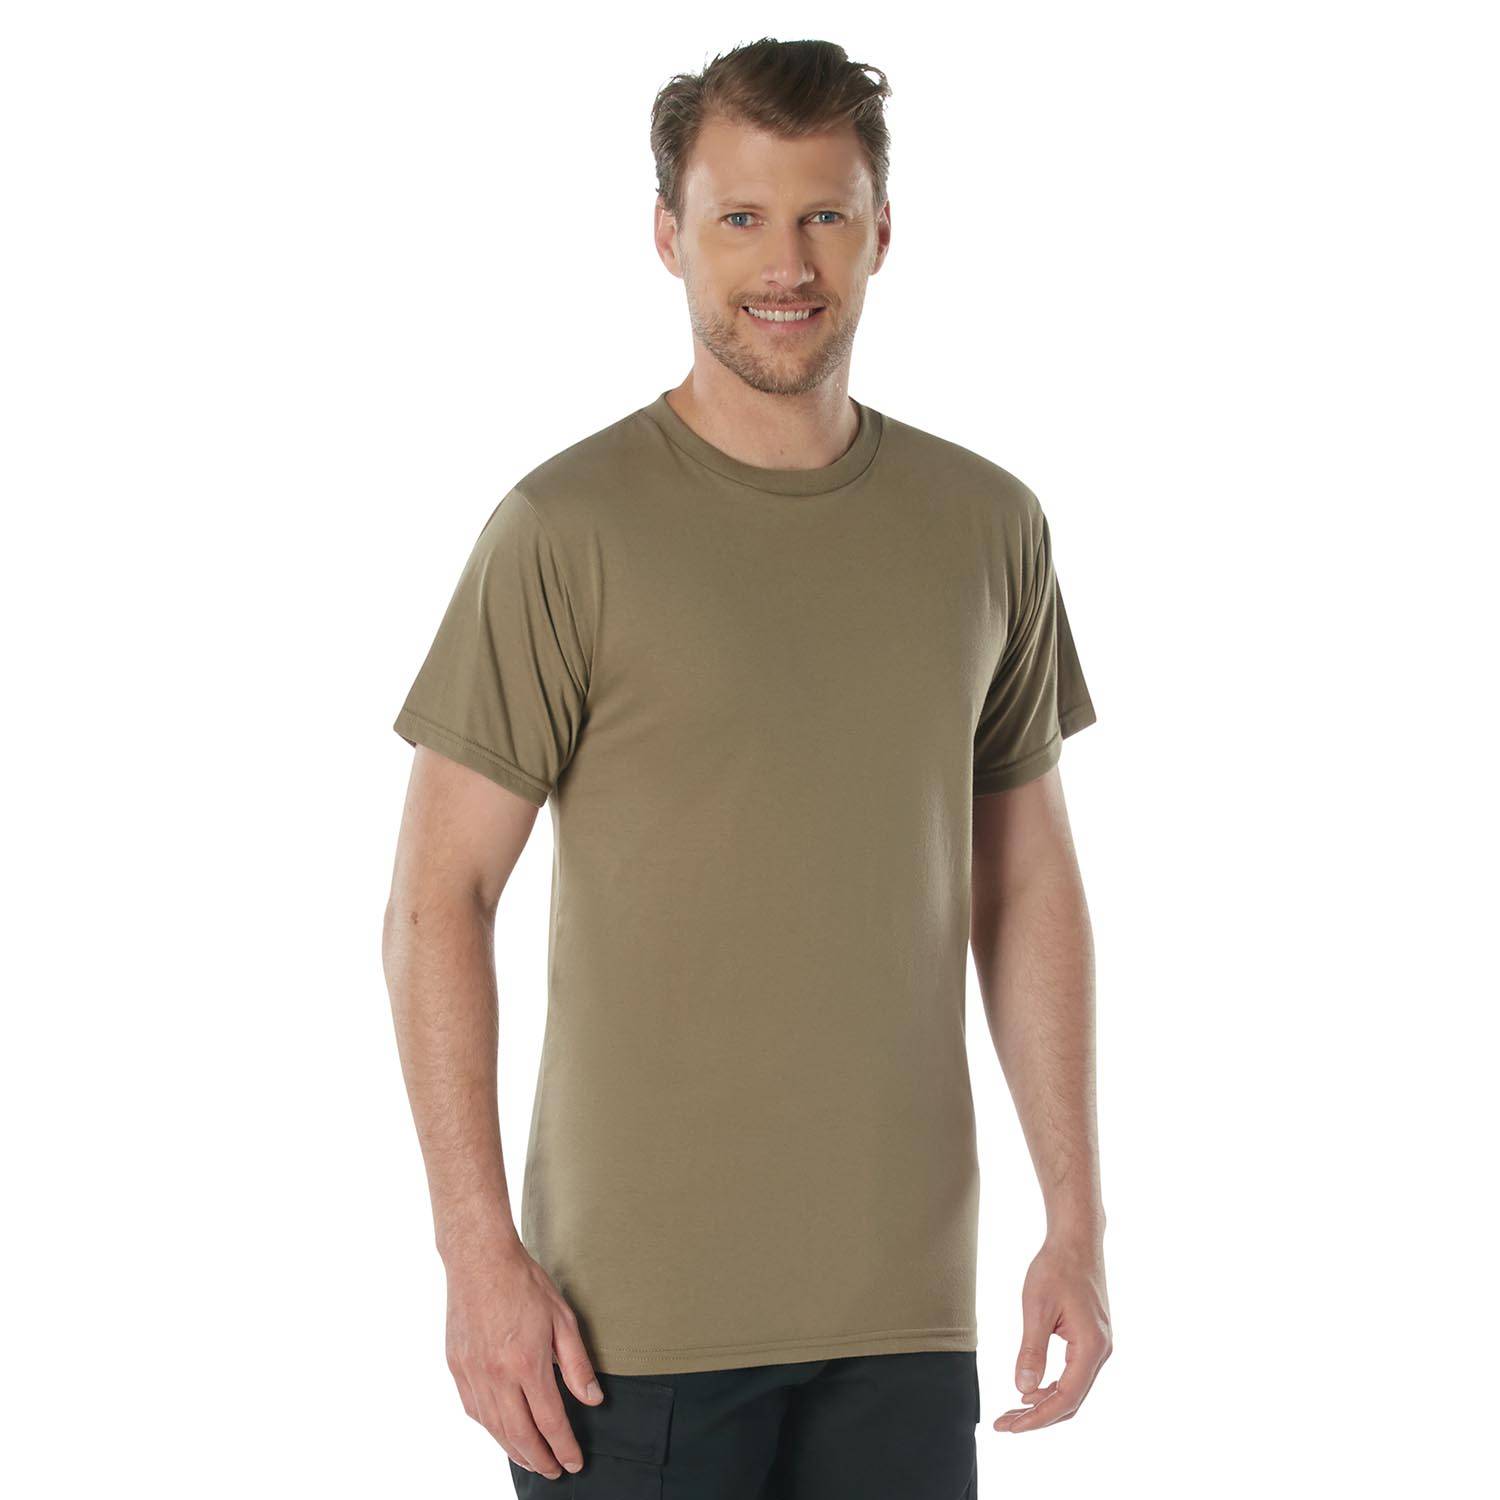 Rothco Tee ShirtRothco AR 670-1 Coyote Brown T-Shirt